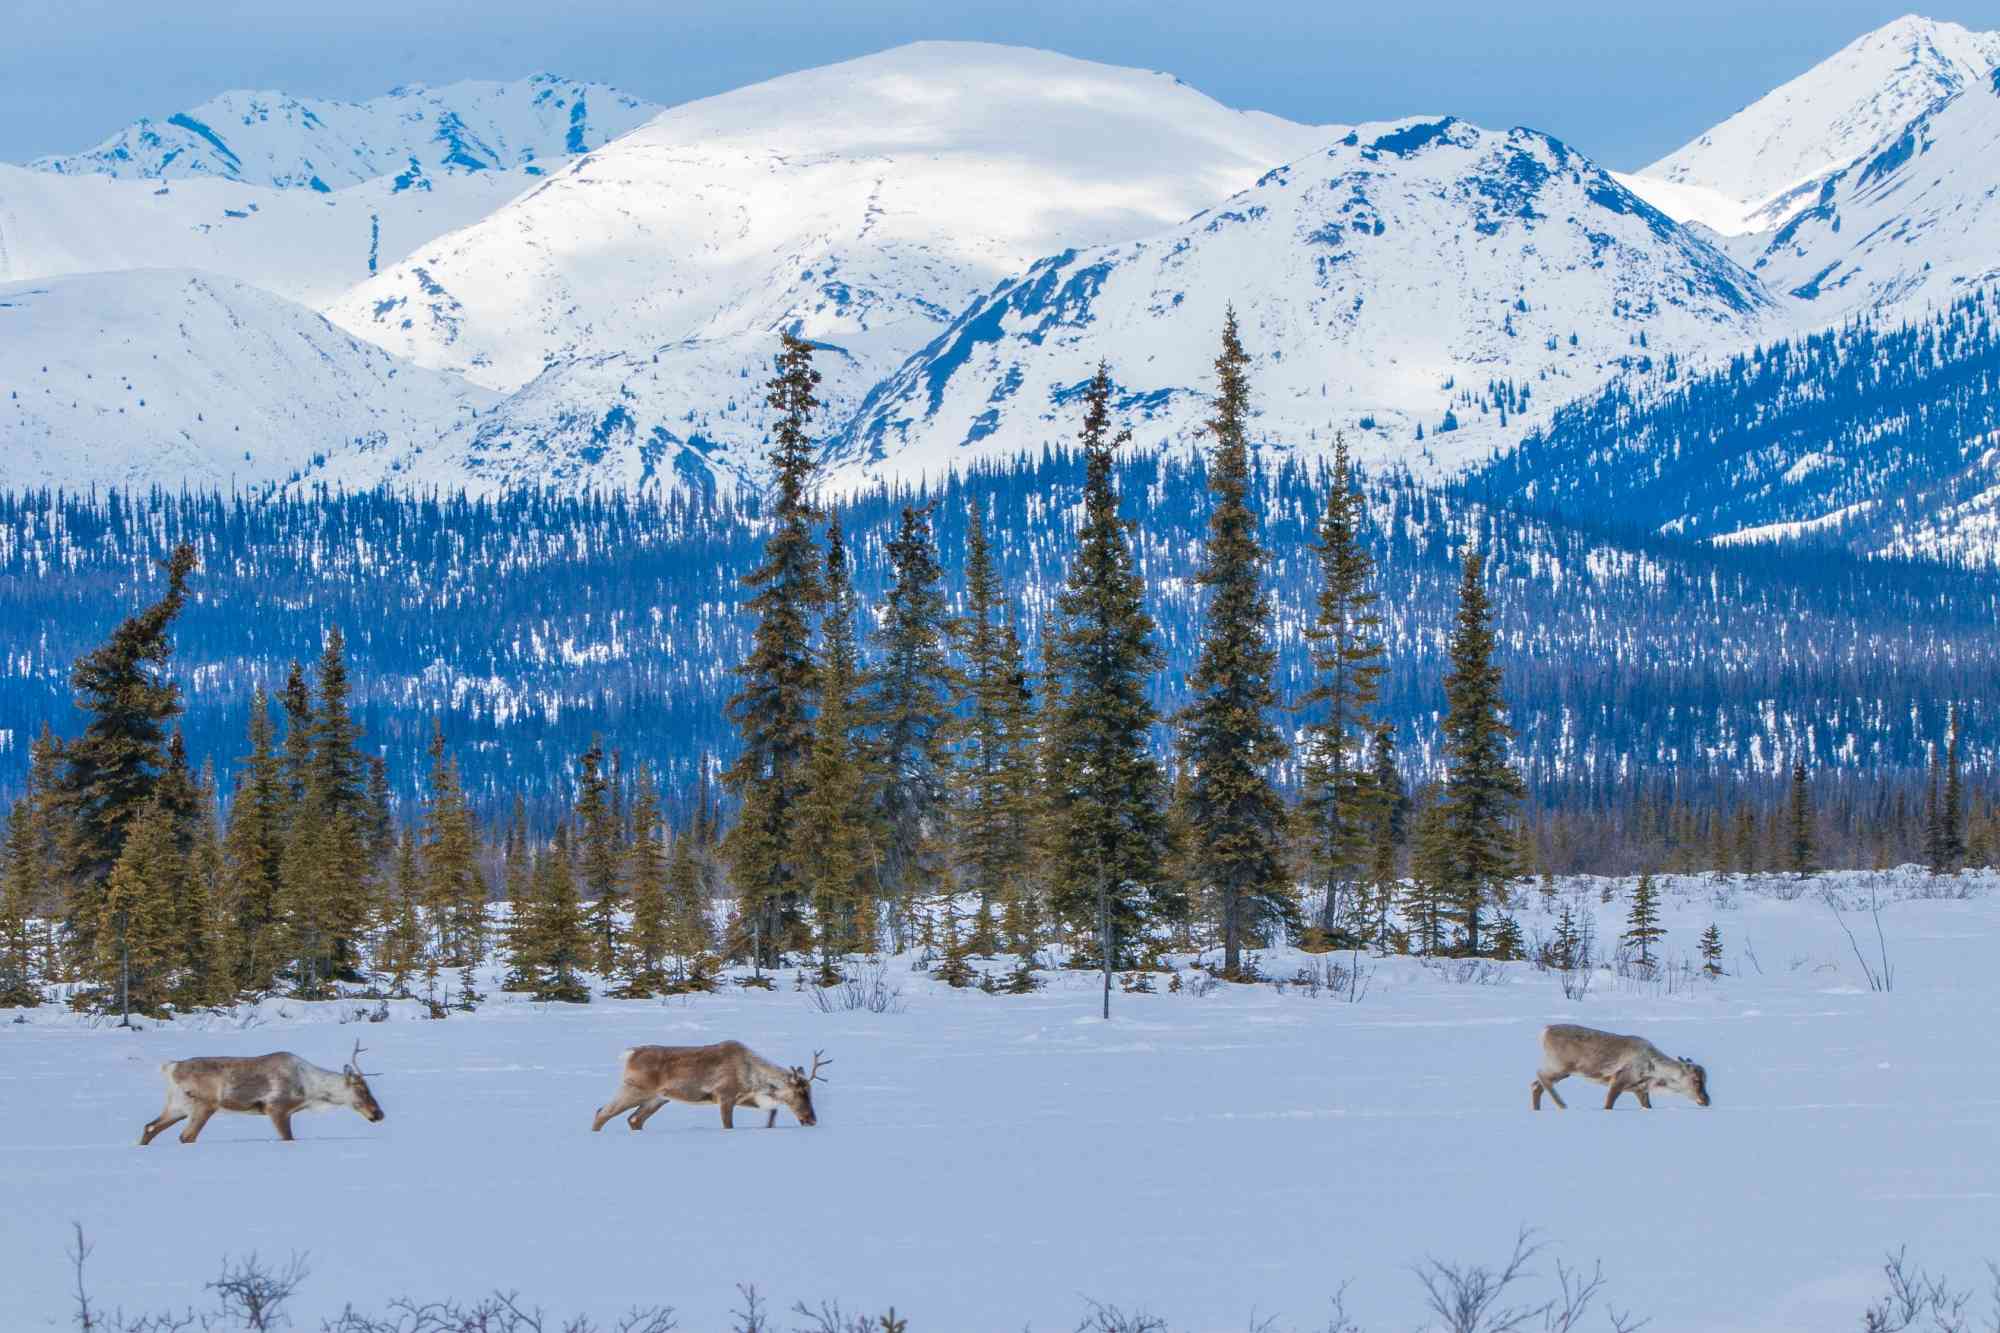 2018.04.24 - Porcupine Caribou - Arctic Refuge - Expedition - Alaska - La Zelle and Gates